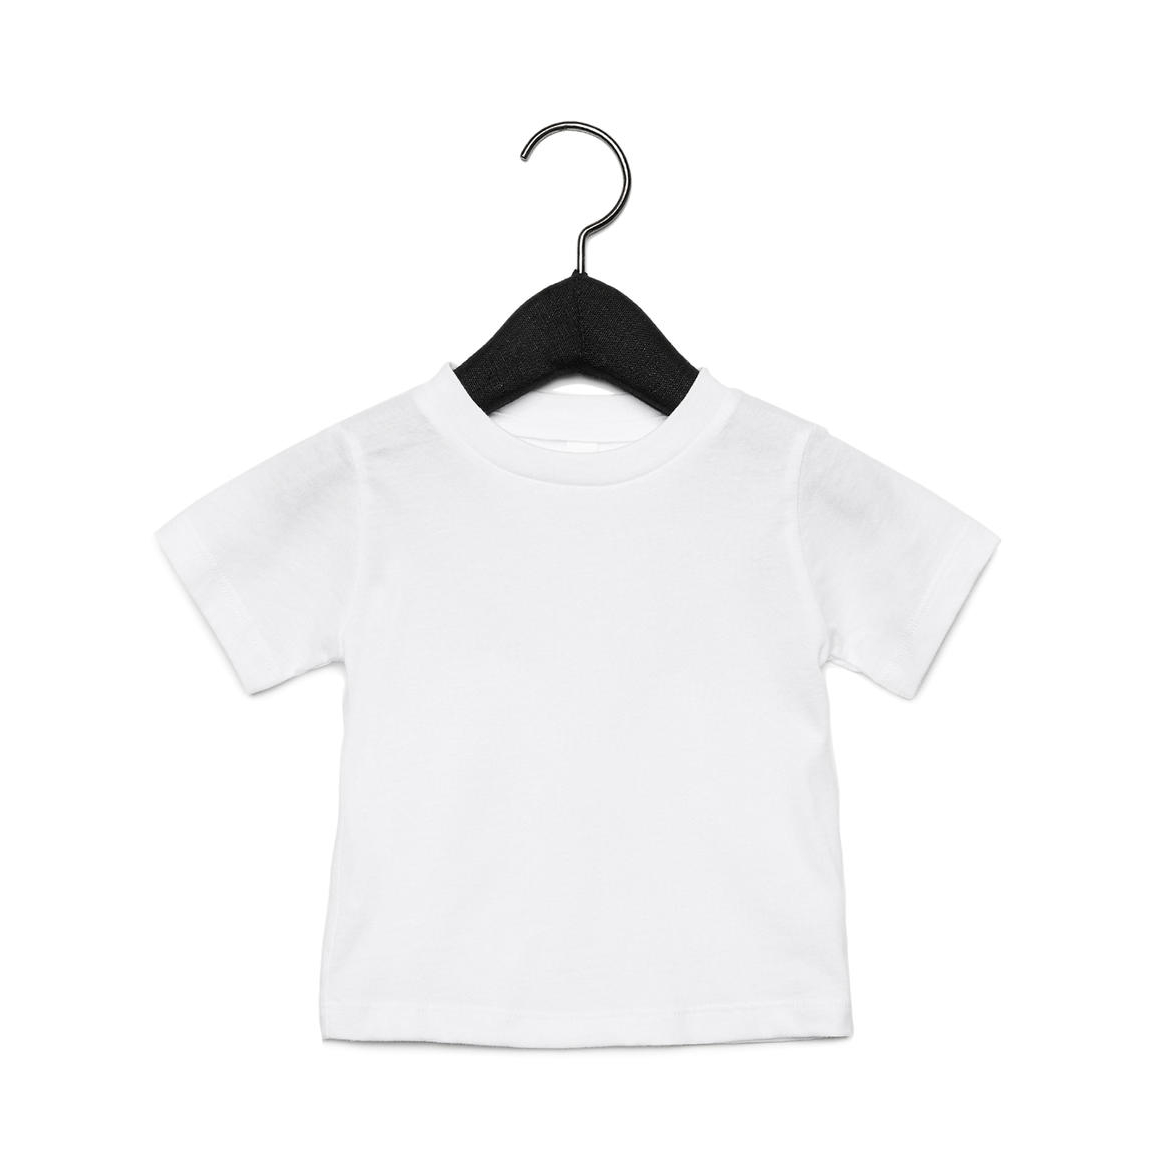 Tričko dětské Baby Jersey B + C s krátkým rukávem - bílé, 18-24 měsíců